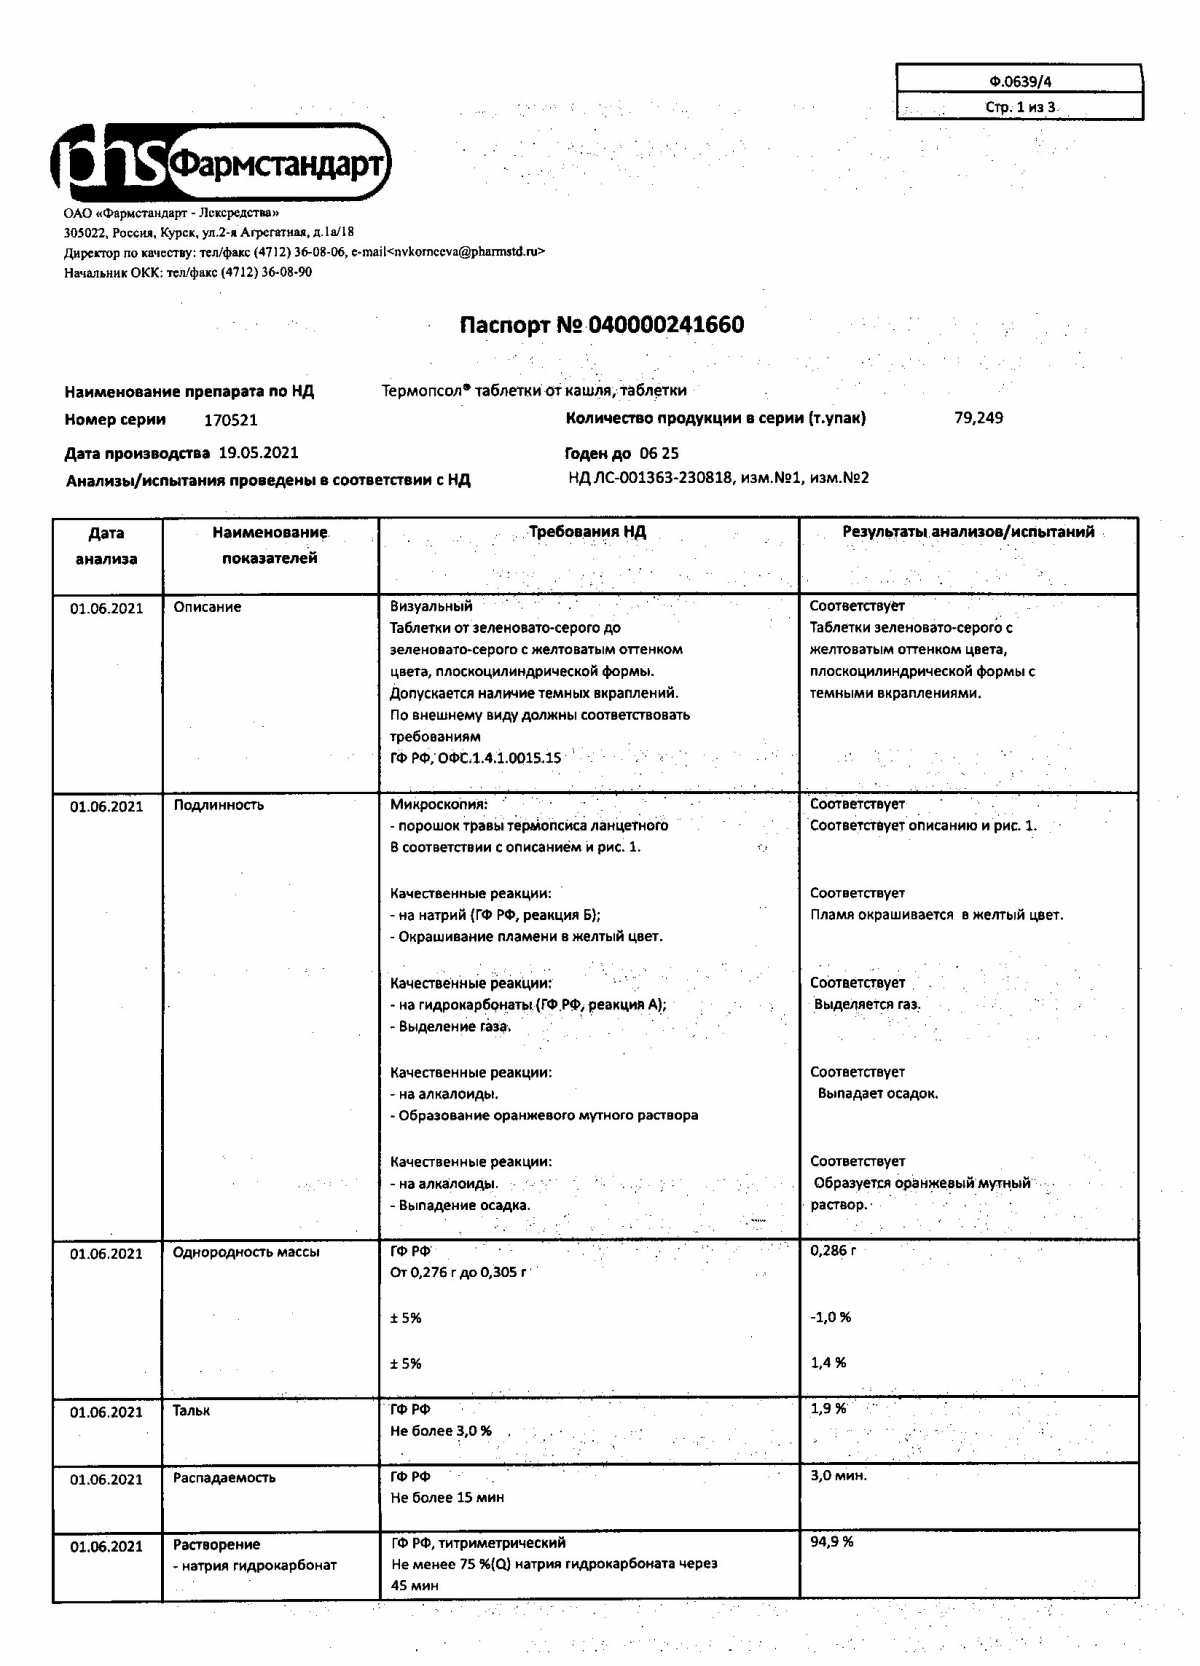 Термопсол названия и цены в Аптеке Вита , Московская область